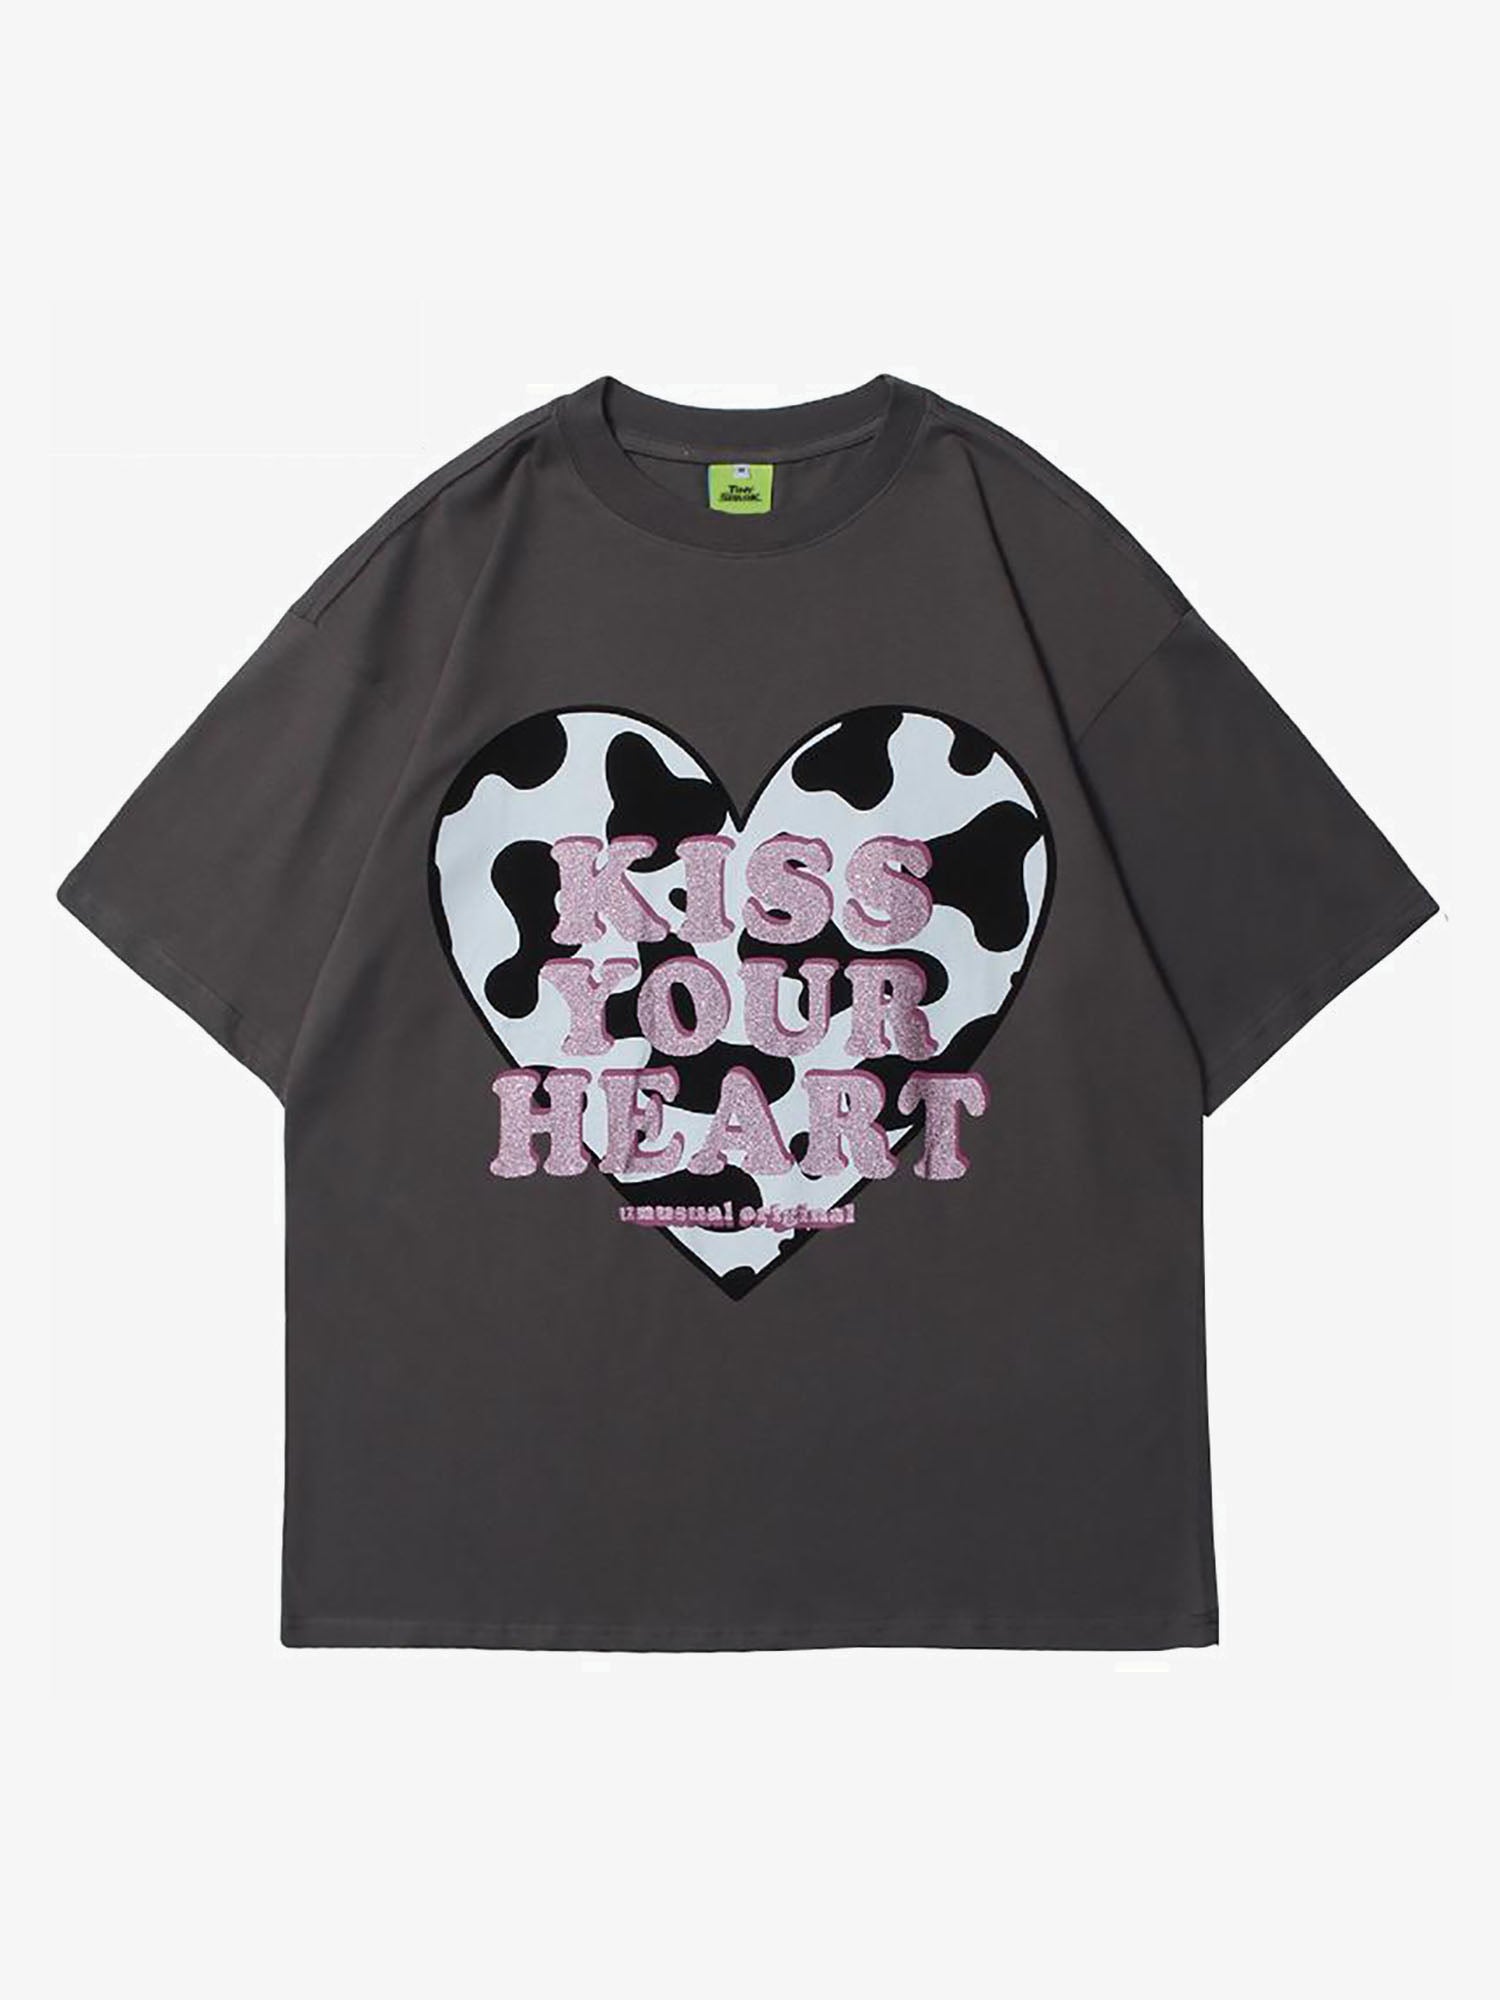 JUSTNOTAG T-shirt a manica corta con lettere a forma di mucca a forma di cuore